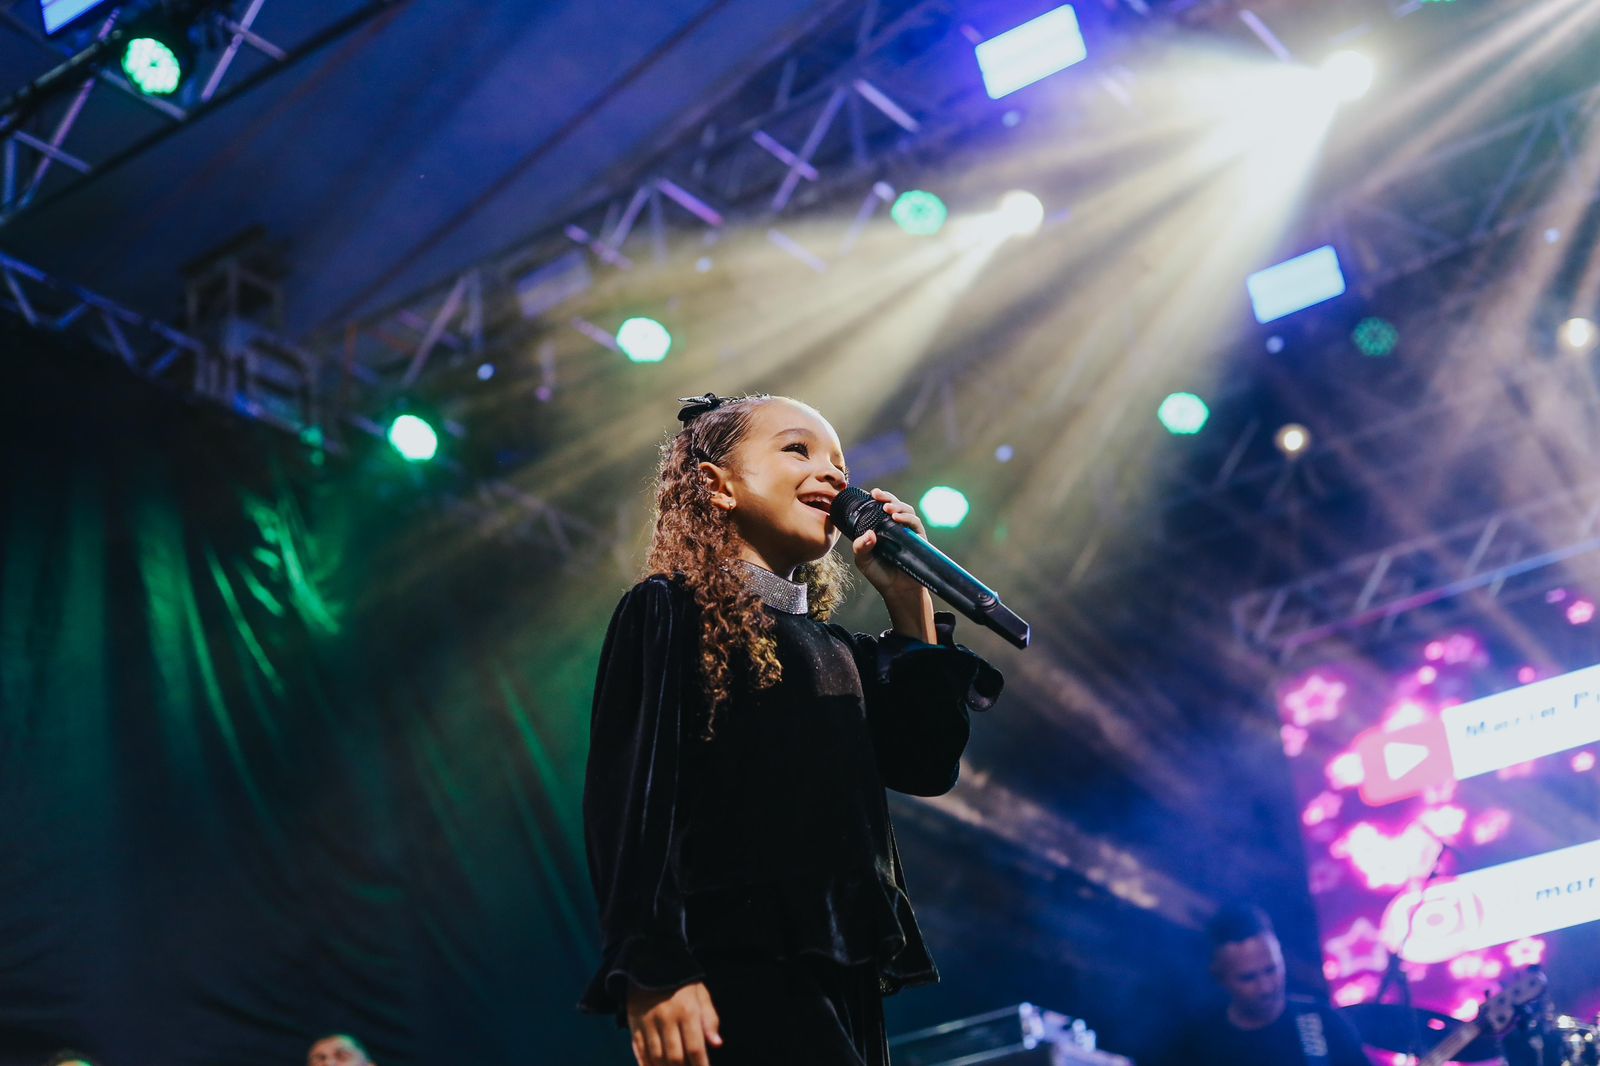 Conheça a cantora mirim Maria Pita, o novo talento da música gospel